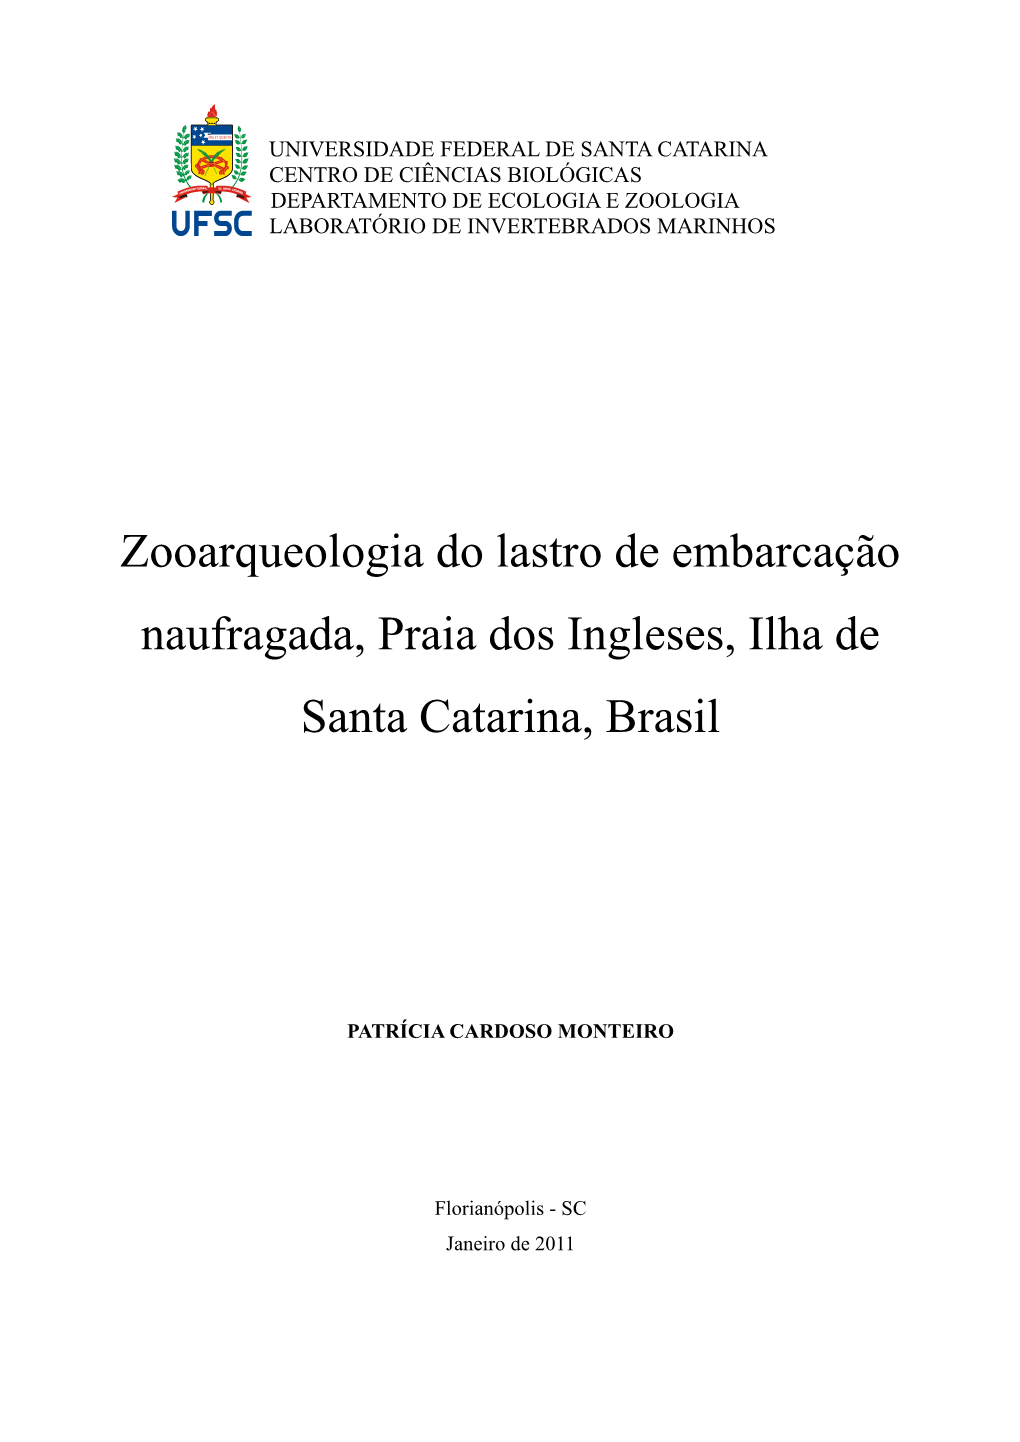 Zooarqueologia Do Lastro De Embarcação Naufragada, Praia Dos Ingleses, Ilha De Santa Catarina, Brasil